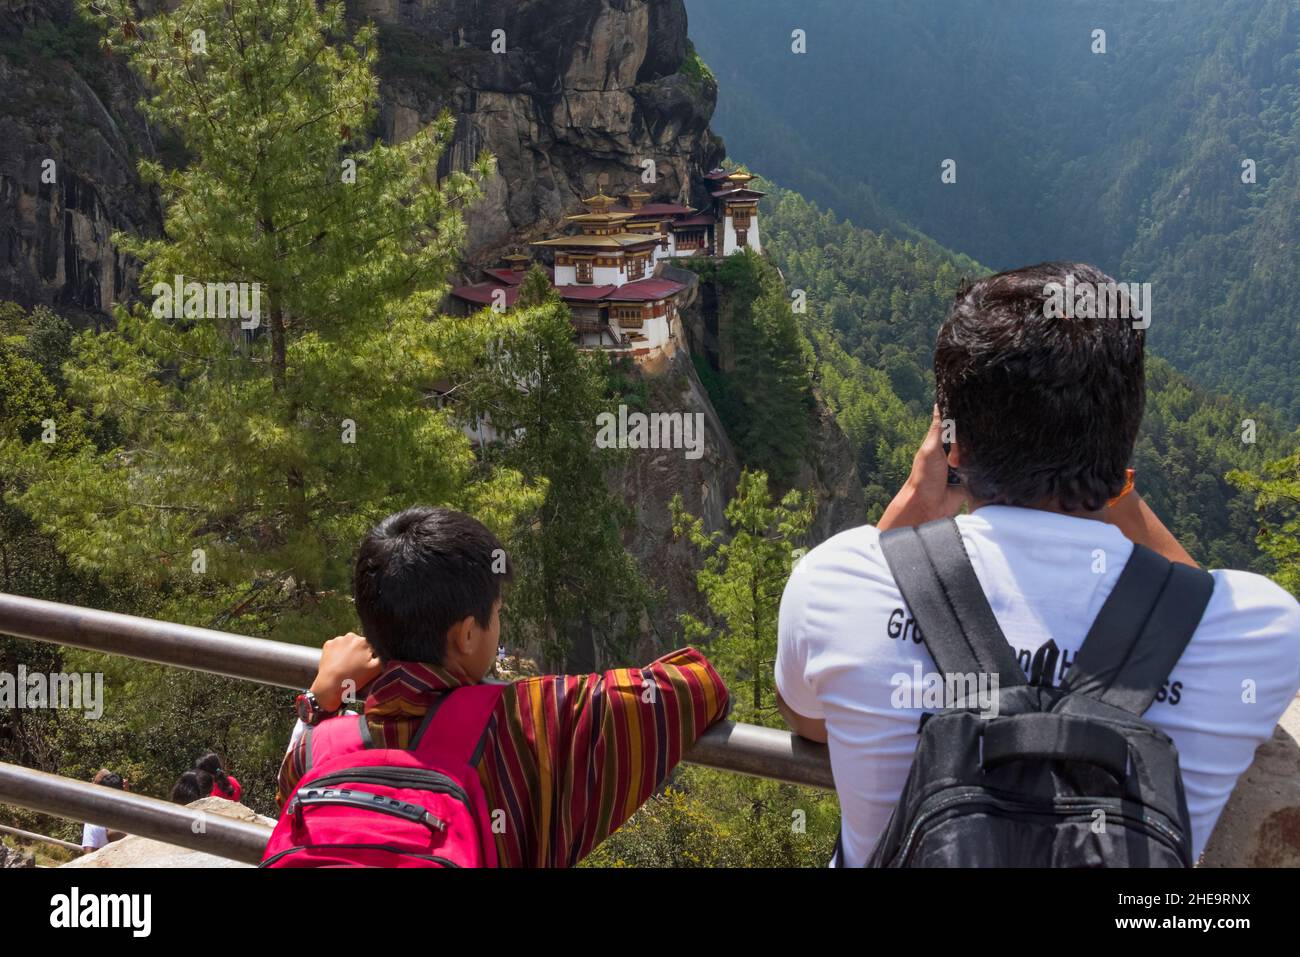 Touristes photographiant Paro Taktsang (également connu sous le nom de Tiger's Nest), Paro, Bhoutan Banque D'Images